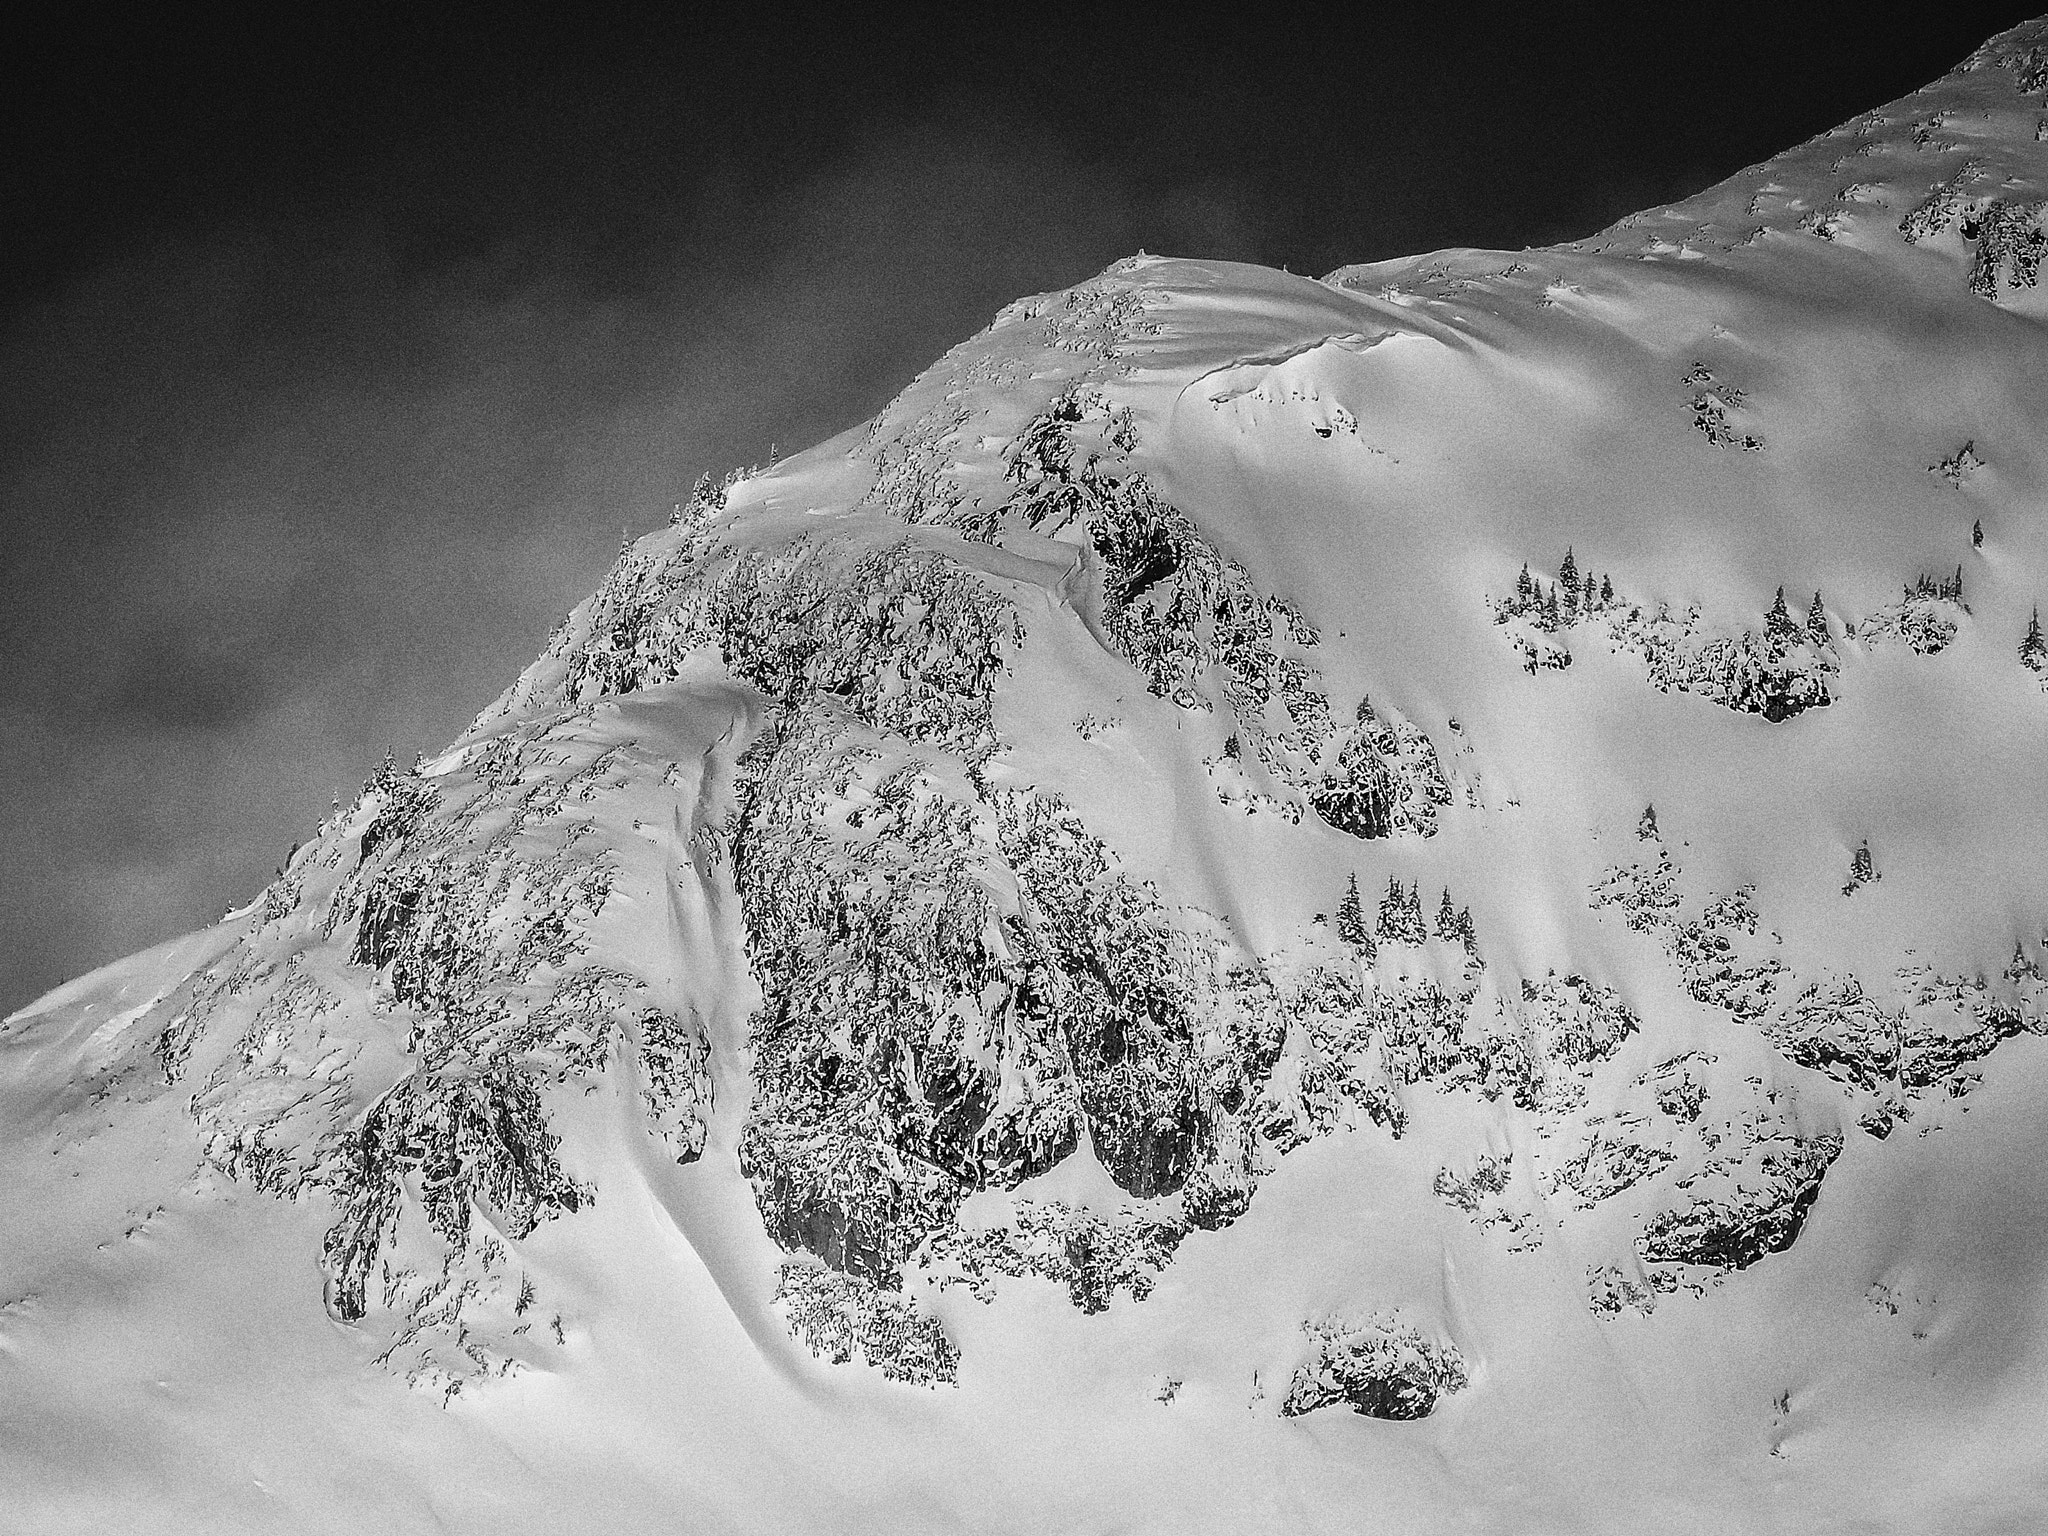 Nikon Coolpix P340 sample photo. Austria mountains photography